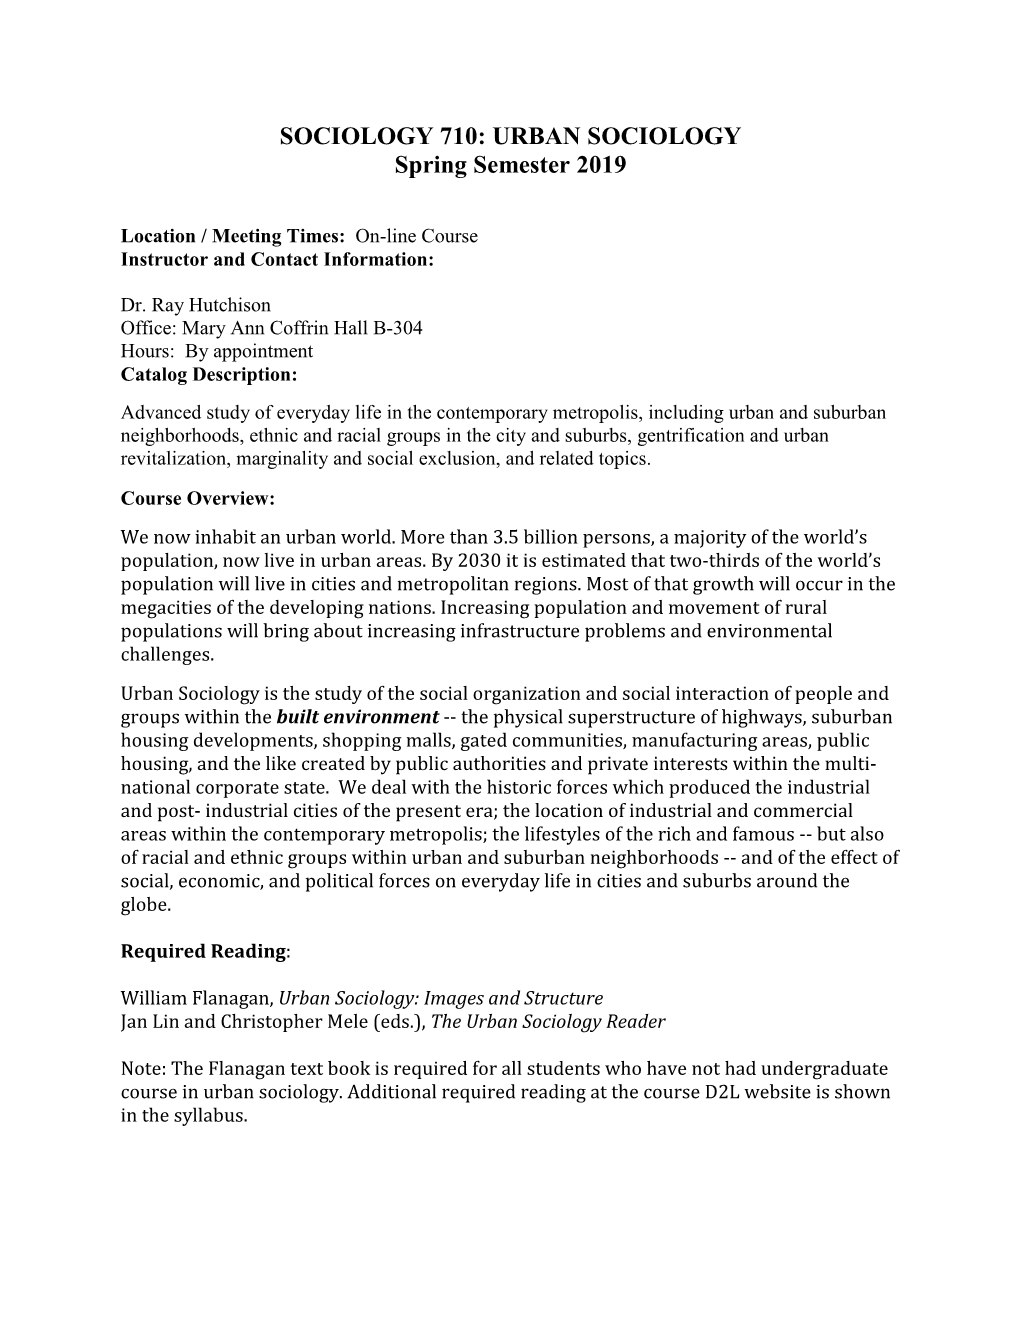 URBAN SOCIOLOGY Spring Semester 2019